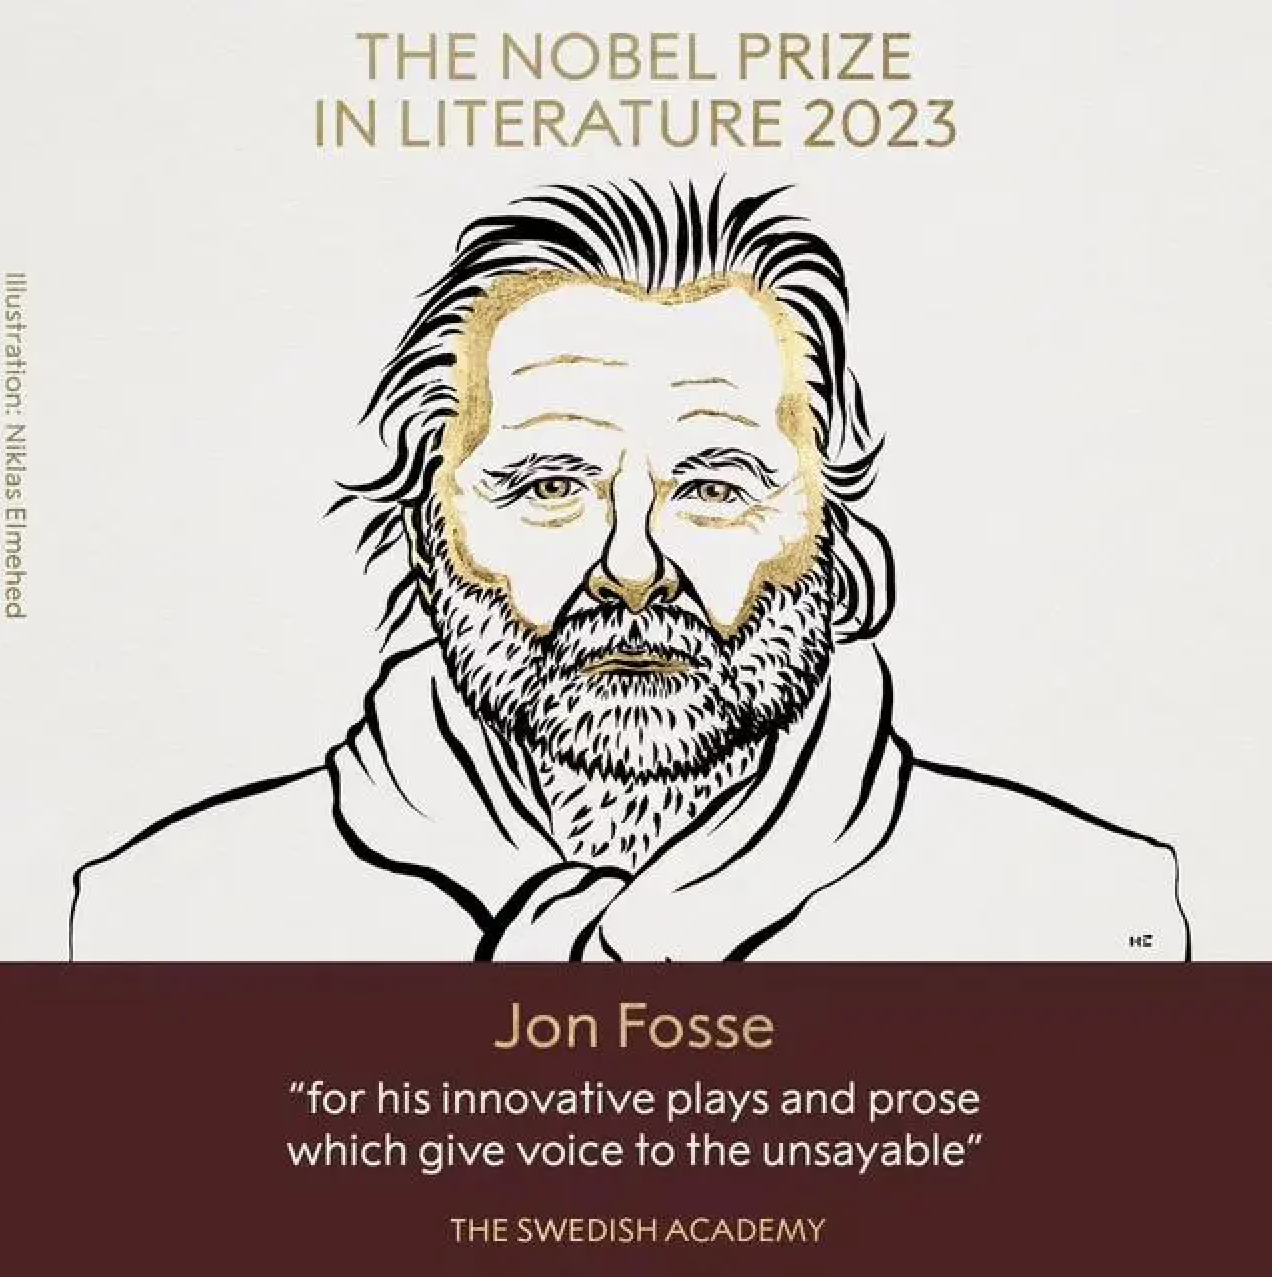 挪威剧作家福瑟获诺贝尔文学奖，作品关注人类生存困境